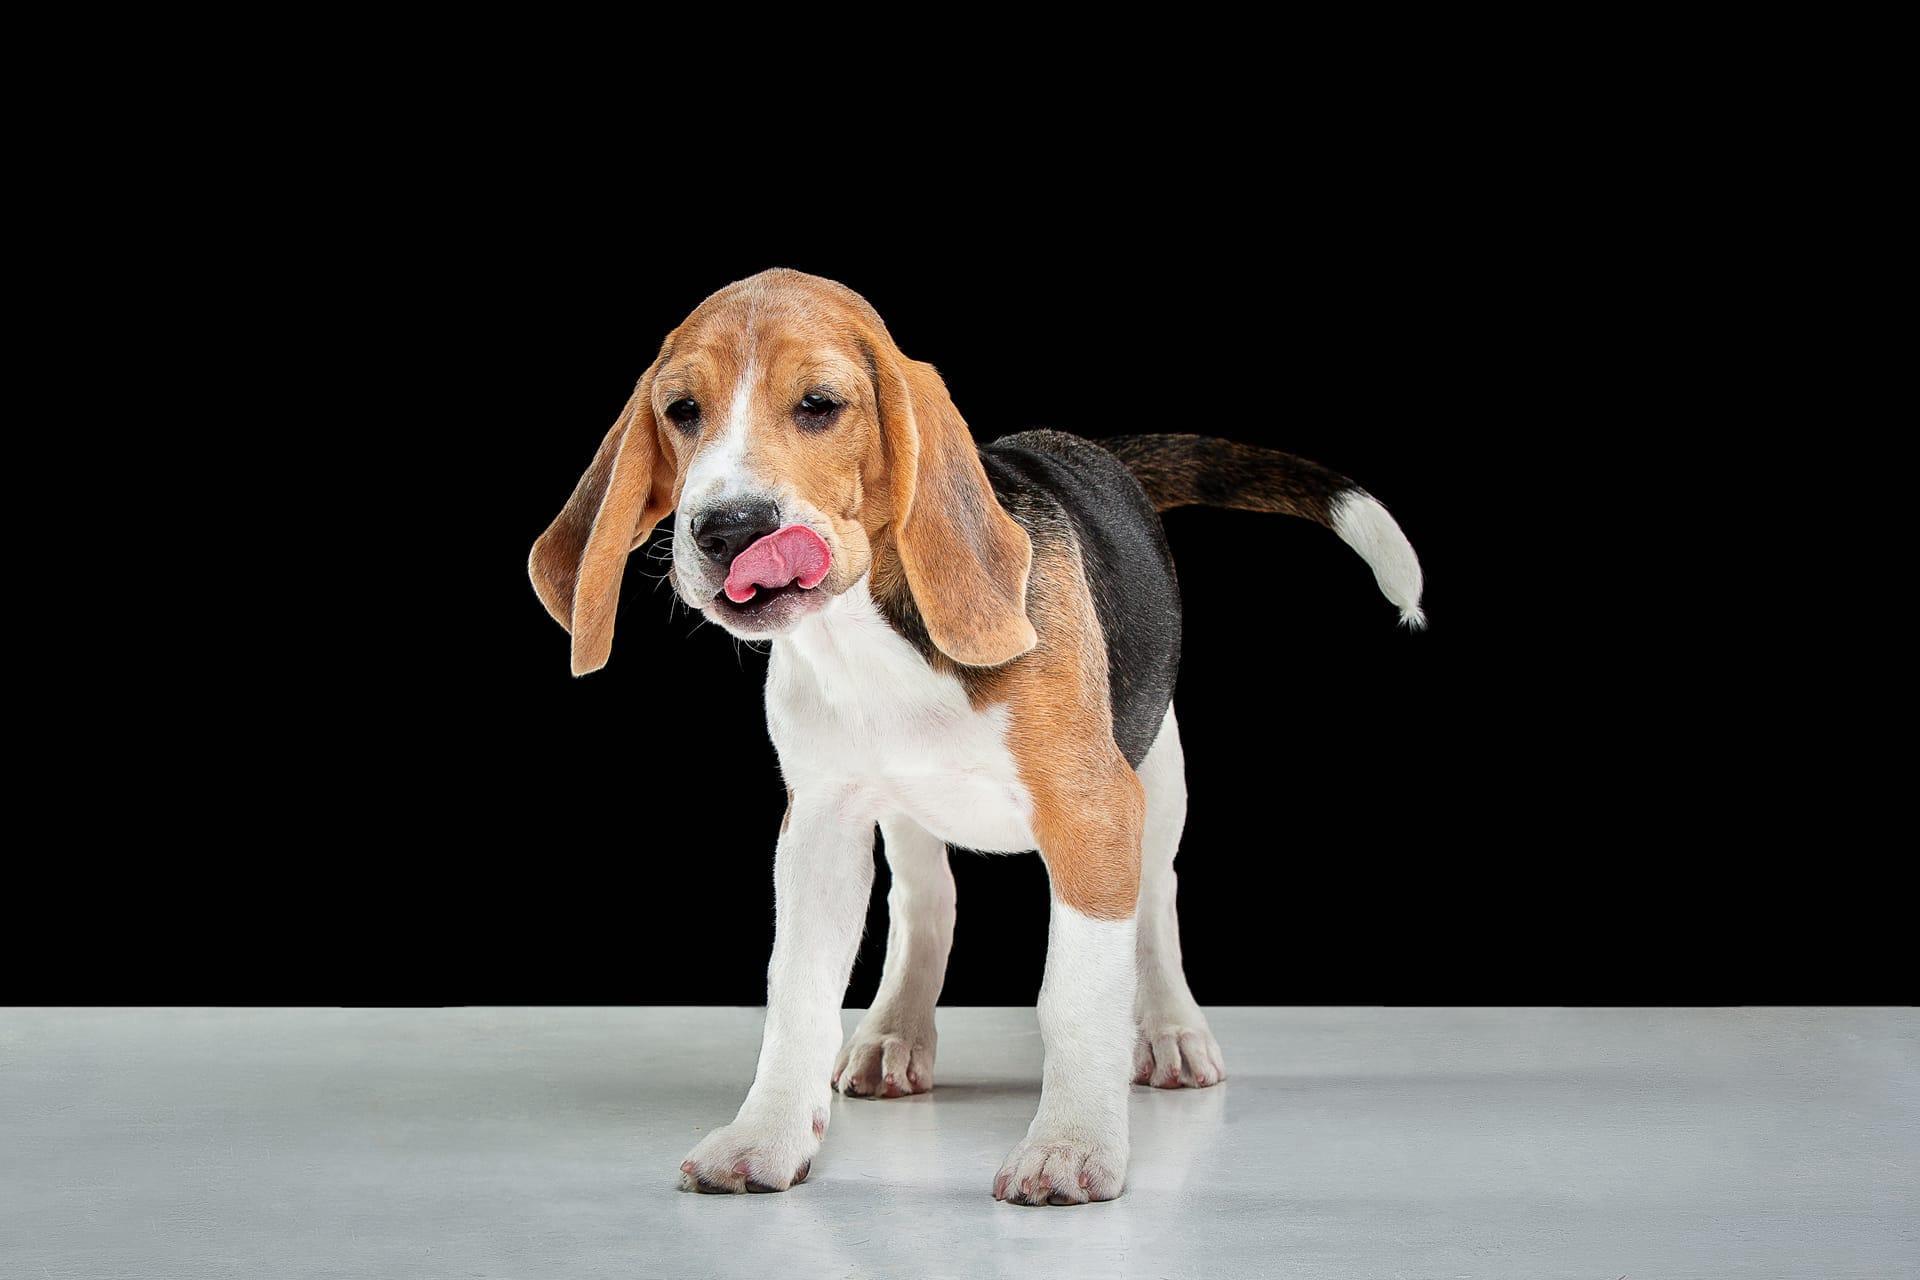 Basset hound pictures